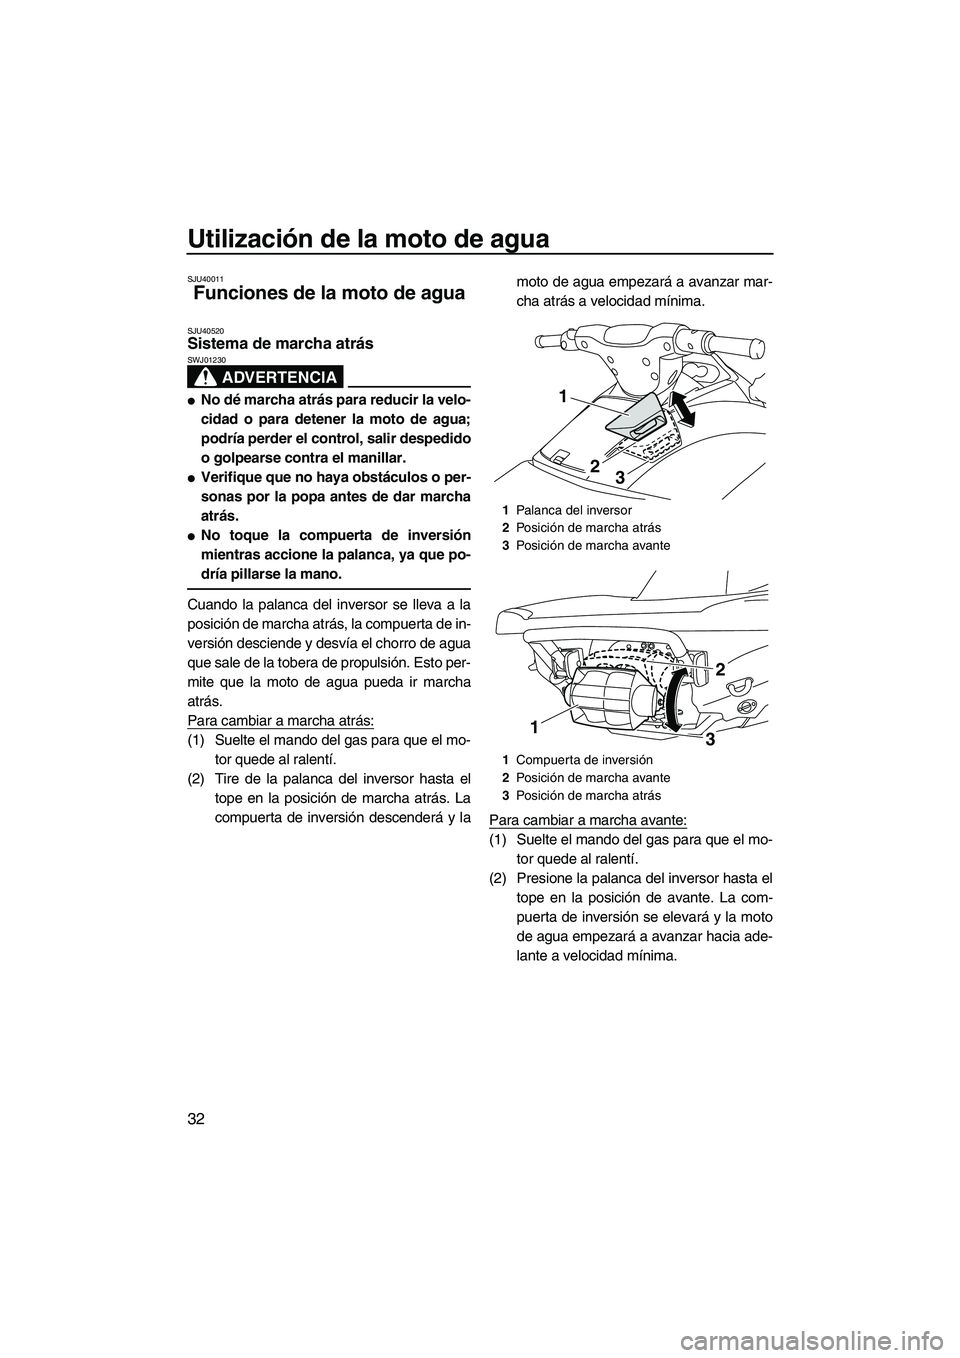 YAMAHA VXS 2012  Manuale de Empleo (in Spanish) Utilización de la moto de agua
32
SJU40011
Funciones de la moto de agua 
SJU40520Sistema de marcha atrás 
ADVERTENCIA
SWJ01230
No dé marcha atrás para reducir la velo-
cidad o para detener la mot